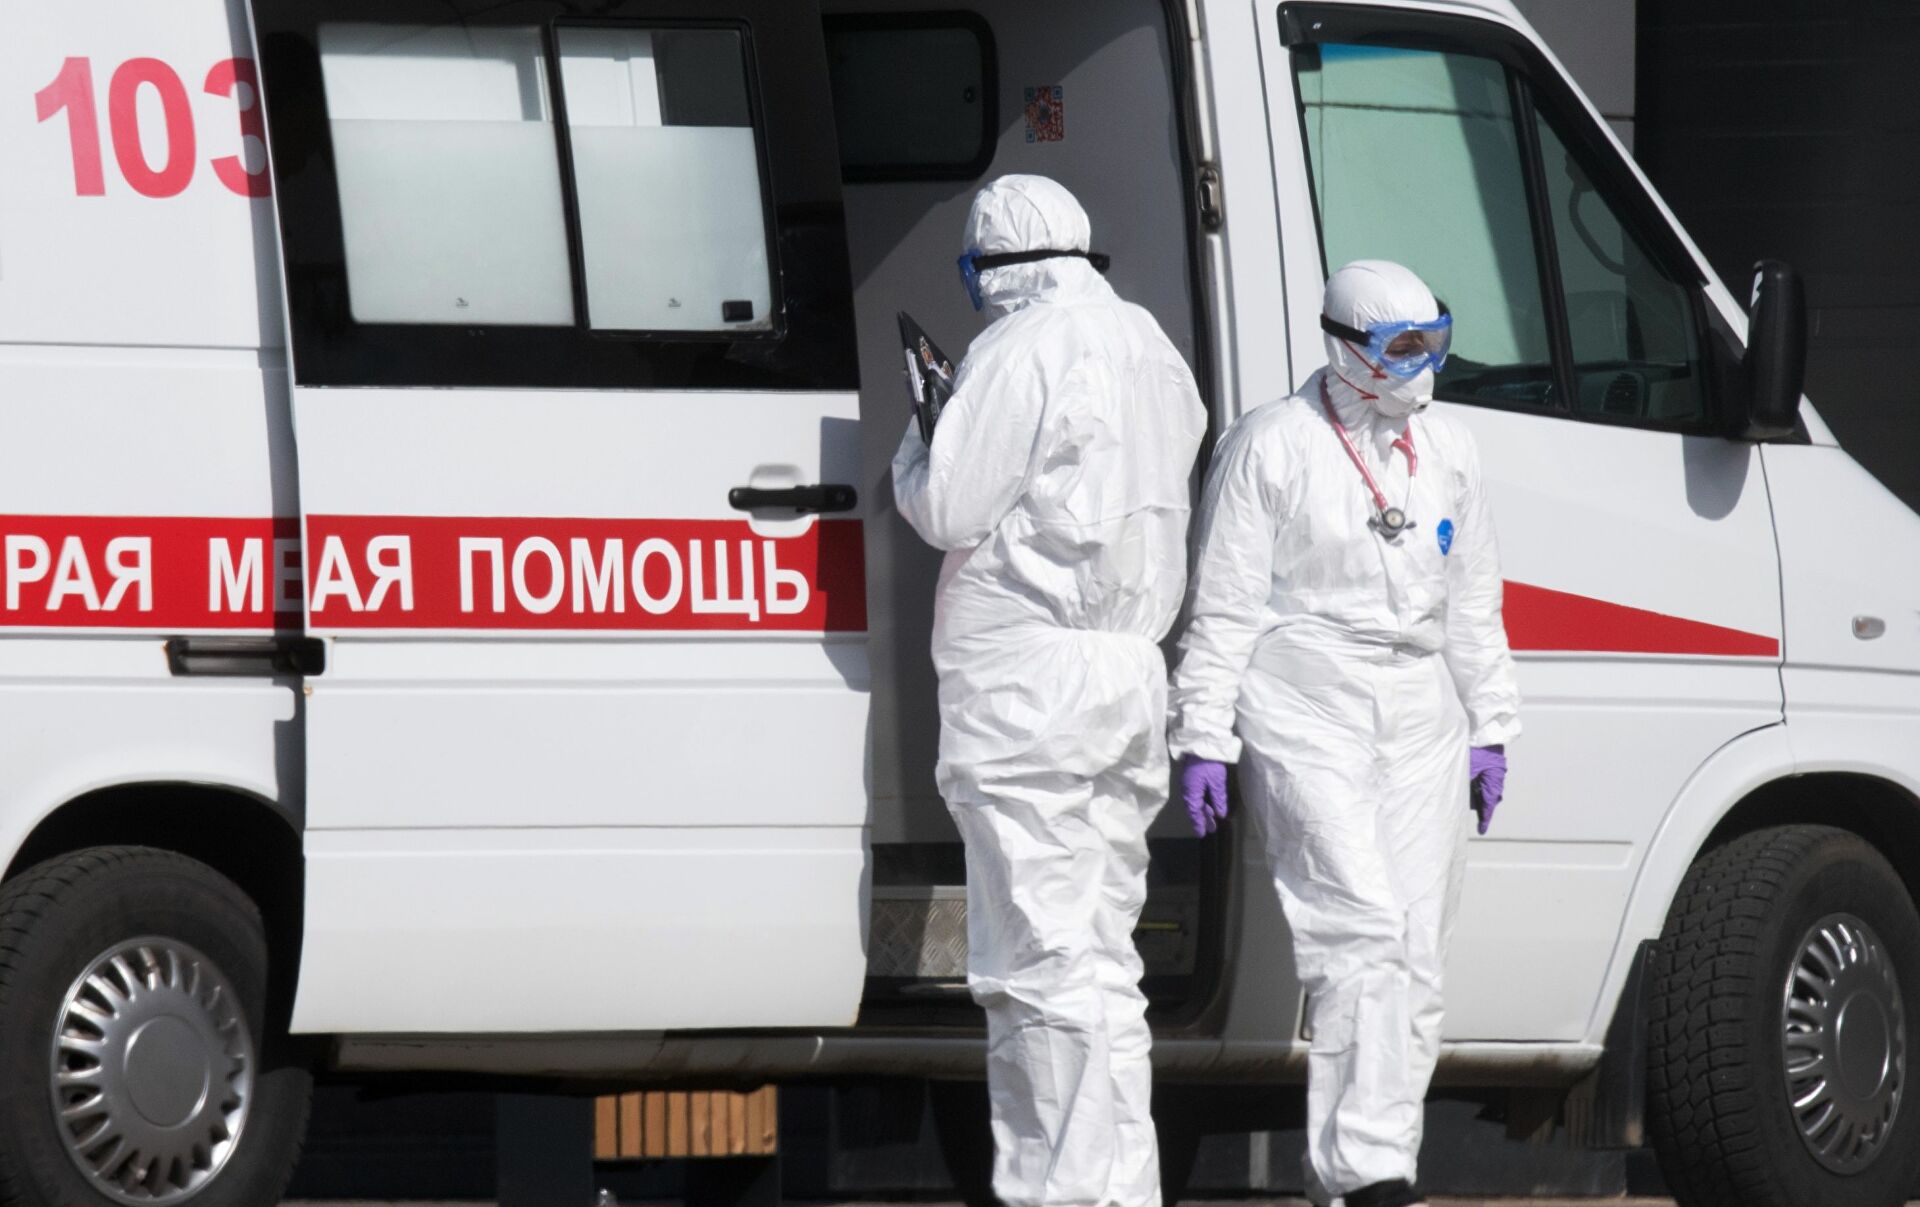 В Томской области запретили мероприятия на улице и привлекли частную клинику для помощи «скорой»